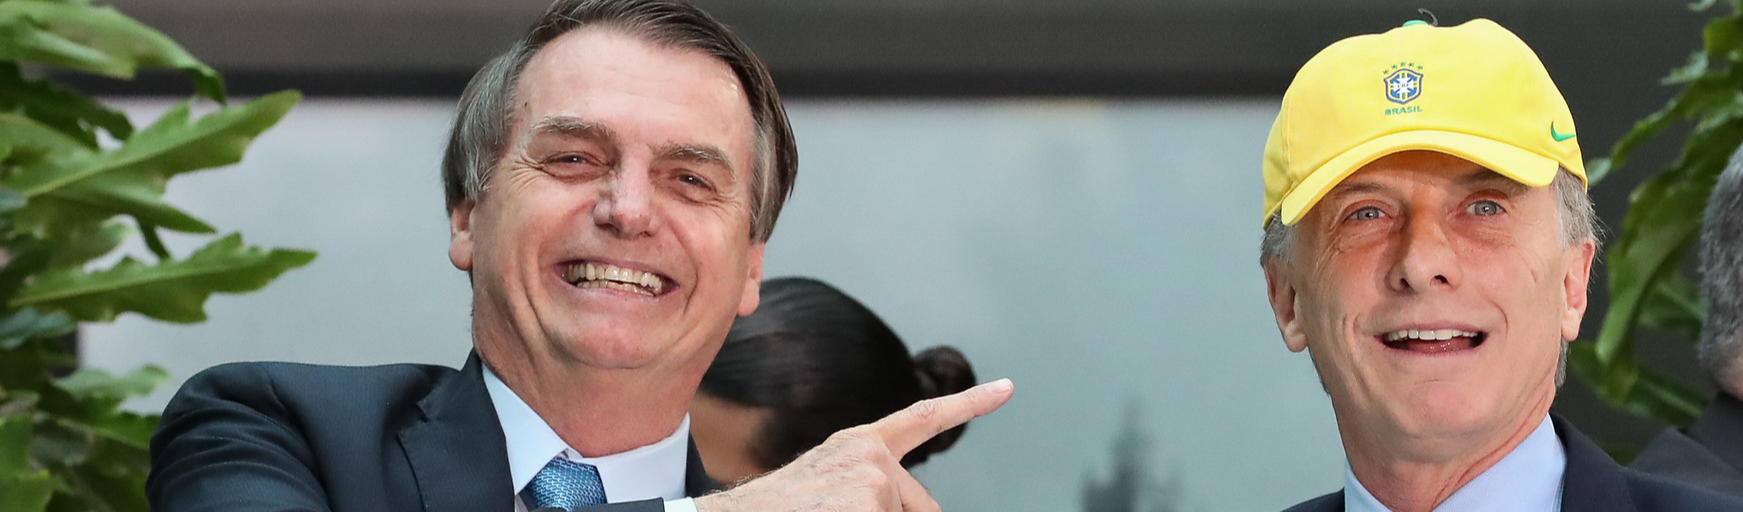 Argentinos rejeitam Jair Bolsonaro: “Seu ódio não é bem-vindo aqui”